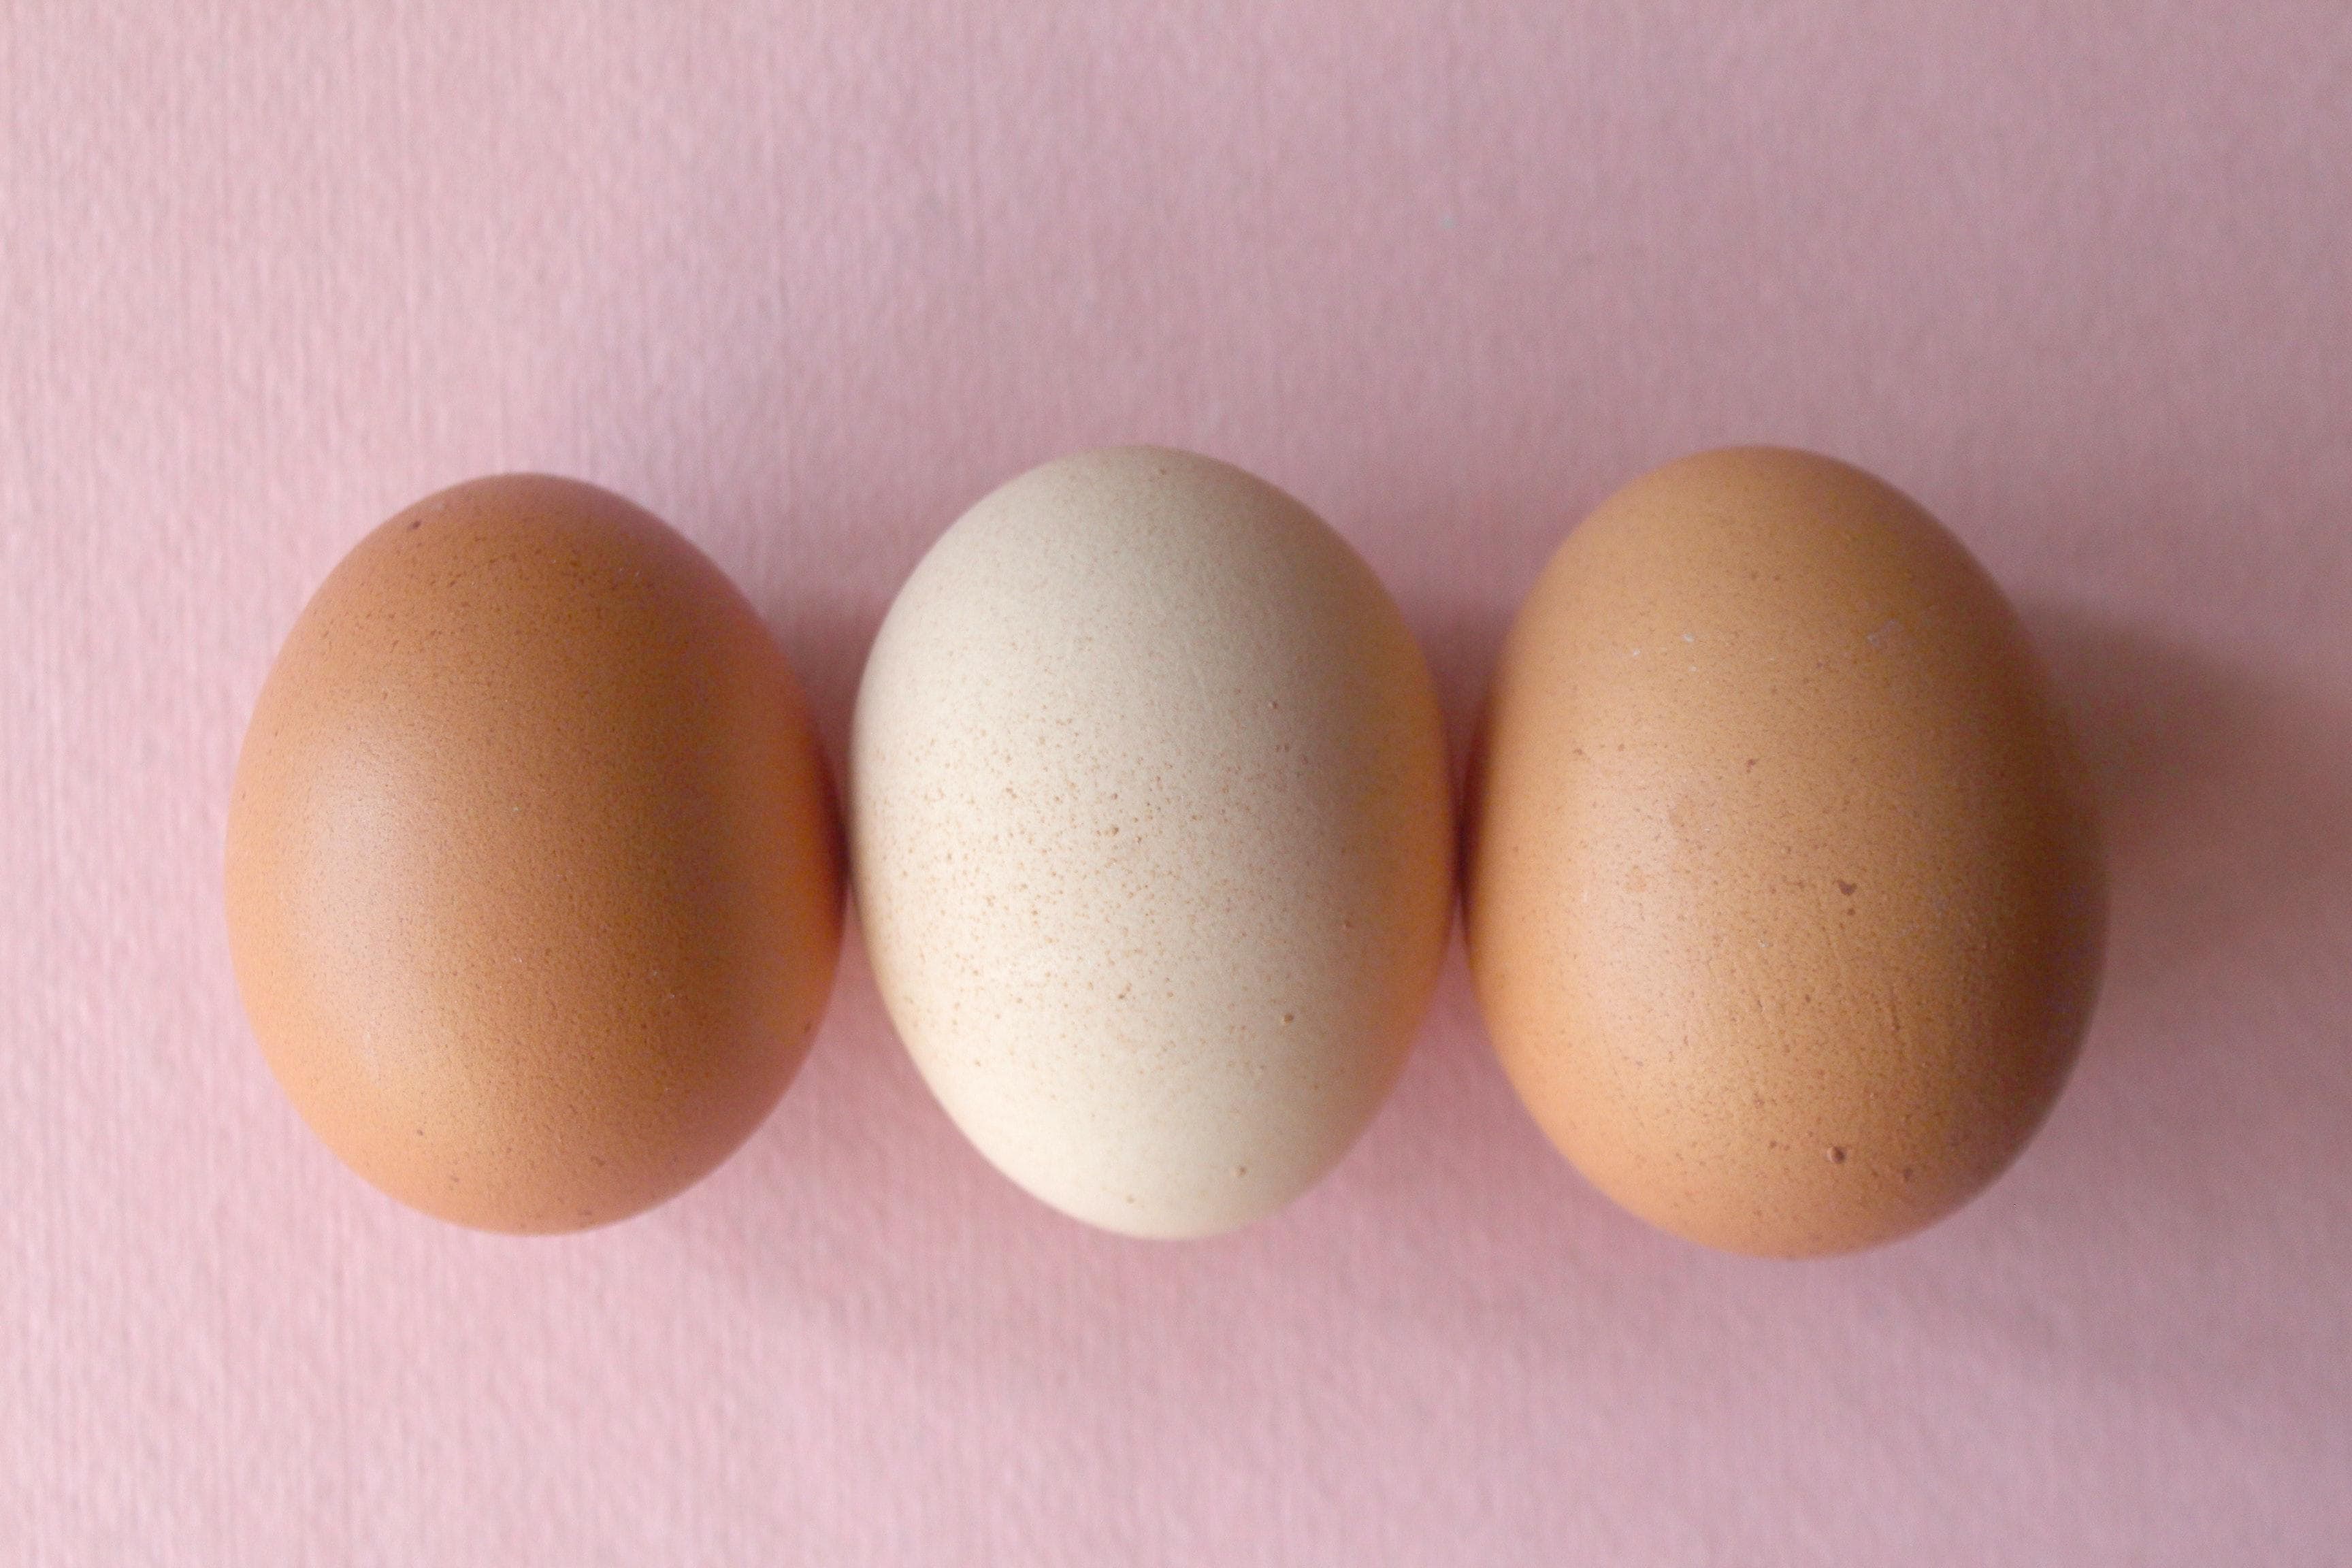 Los huevos, un tesoro nutricional: ¿Se guardan en la nevera o a temperatura ambiente?